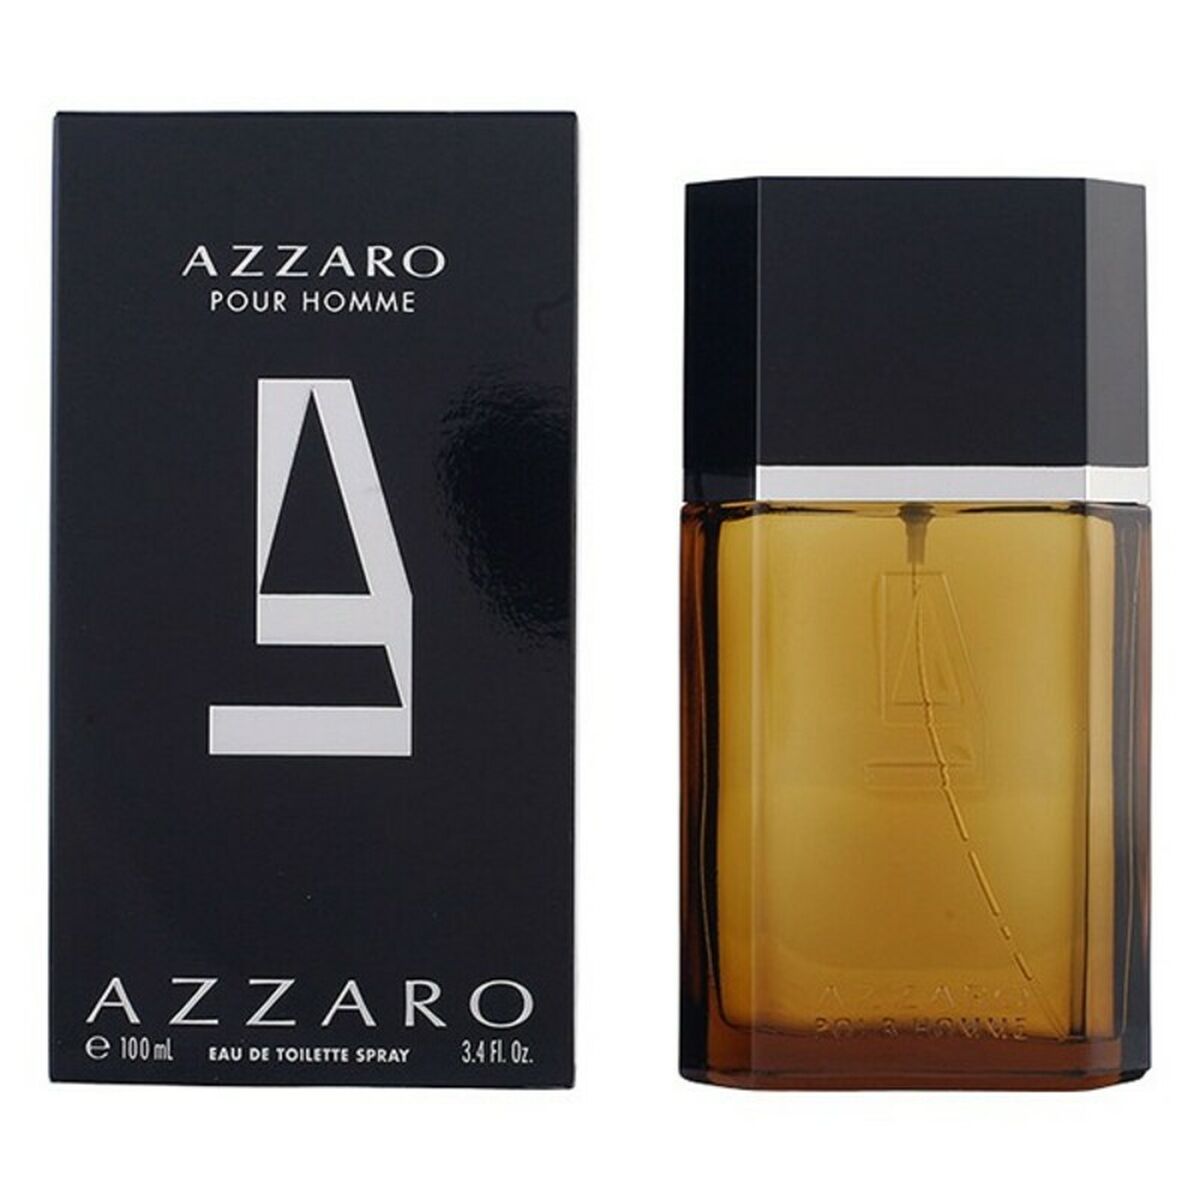 Osta tuote Miesten parfyymi Azzaro Azzaro Pour Homme EDT verkkokaupastamme Korhone: Parfyymit & Kosmetiikka 10% alennuksella koodilla KORHONE